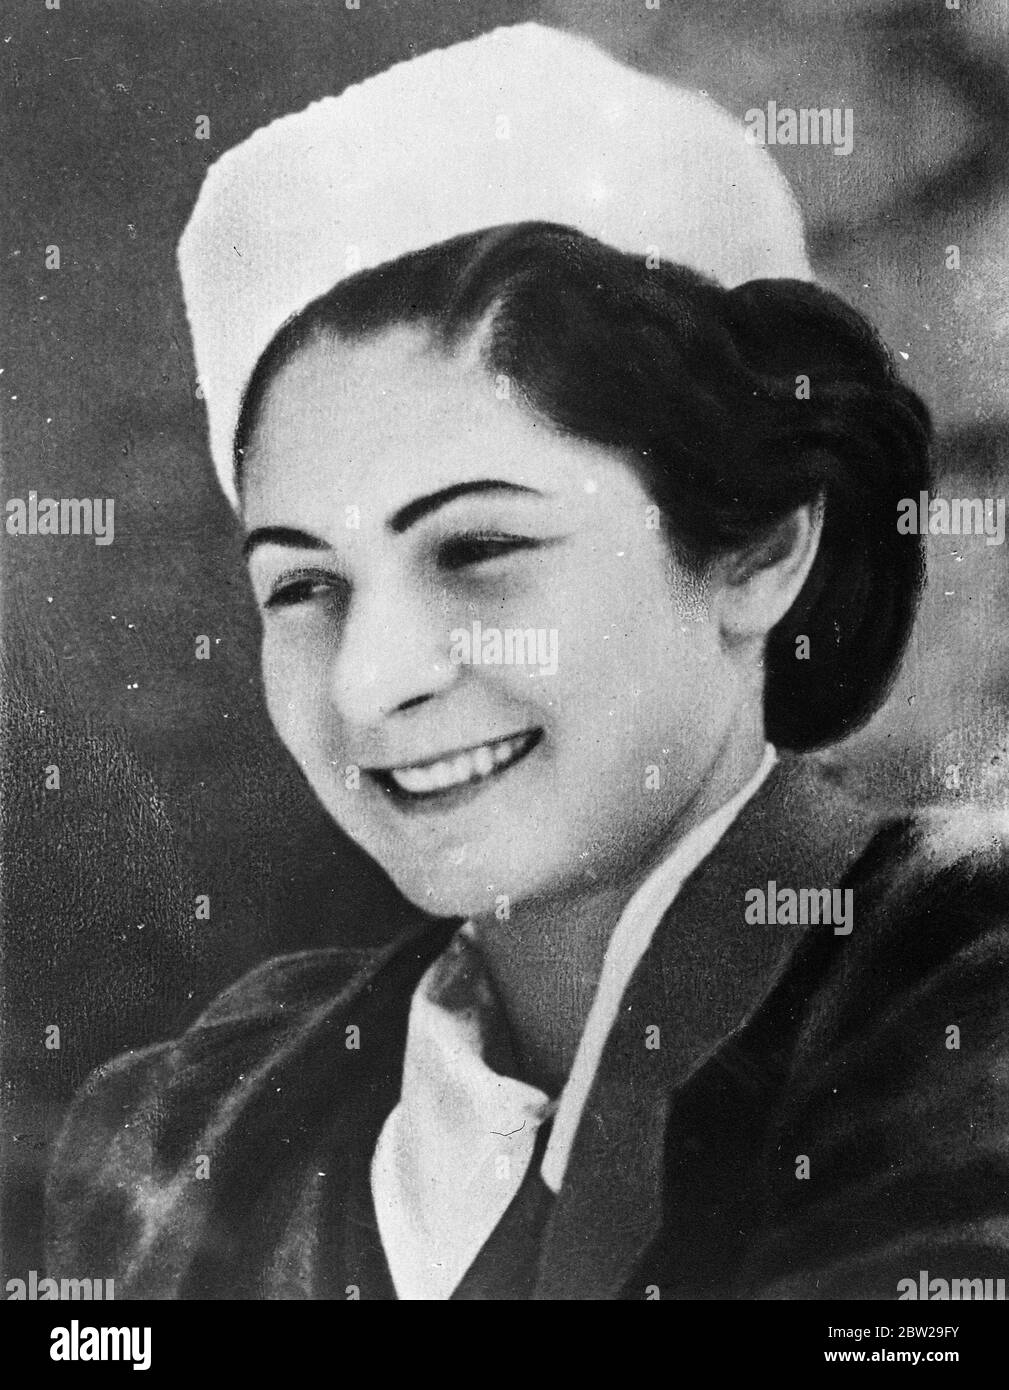 Re Farouk a sposarsi in gennaio. Mlle Farida Zulficar, fidanzata del  giovane re Farouk d'Egitto. Il matrimonio del ragazzo re si svolgerà nella  prima settimana di gennaio 1938, a Montaza Palace, la